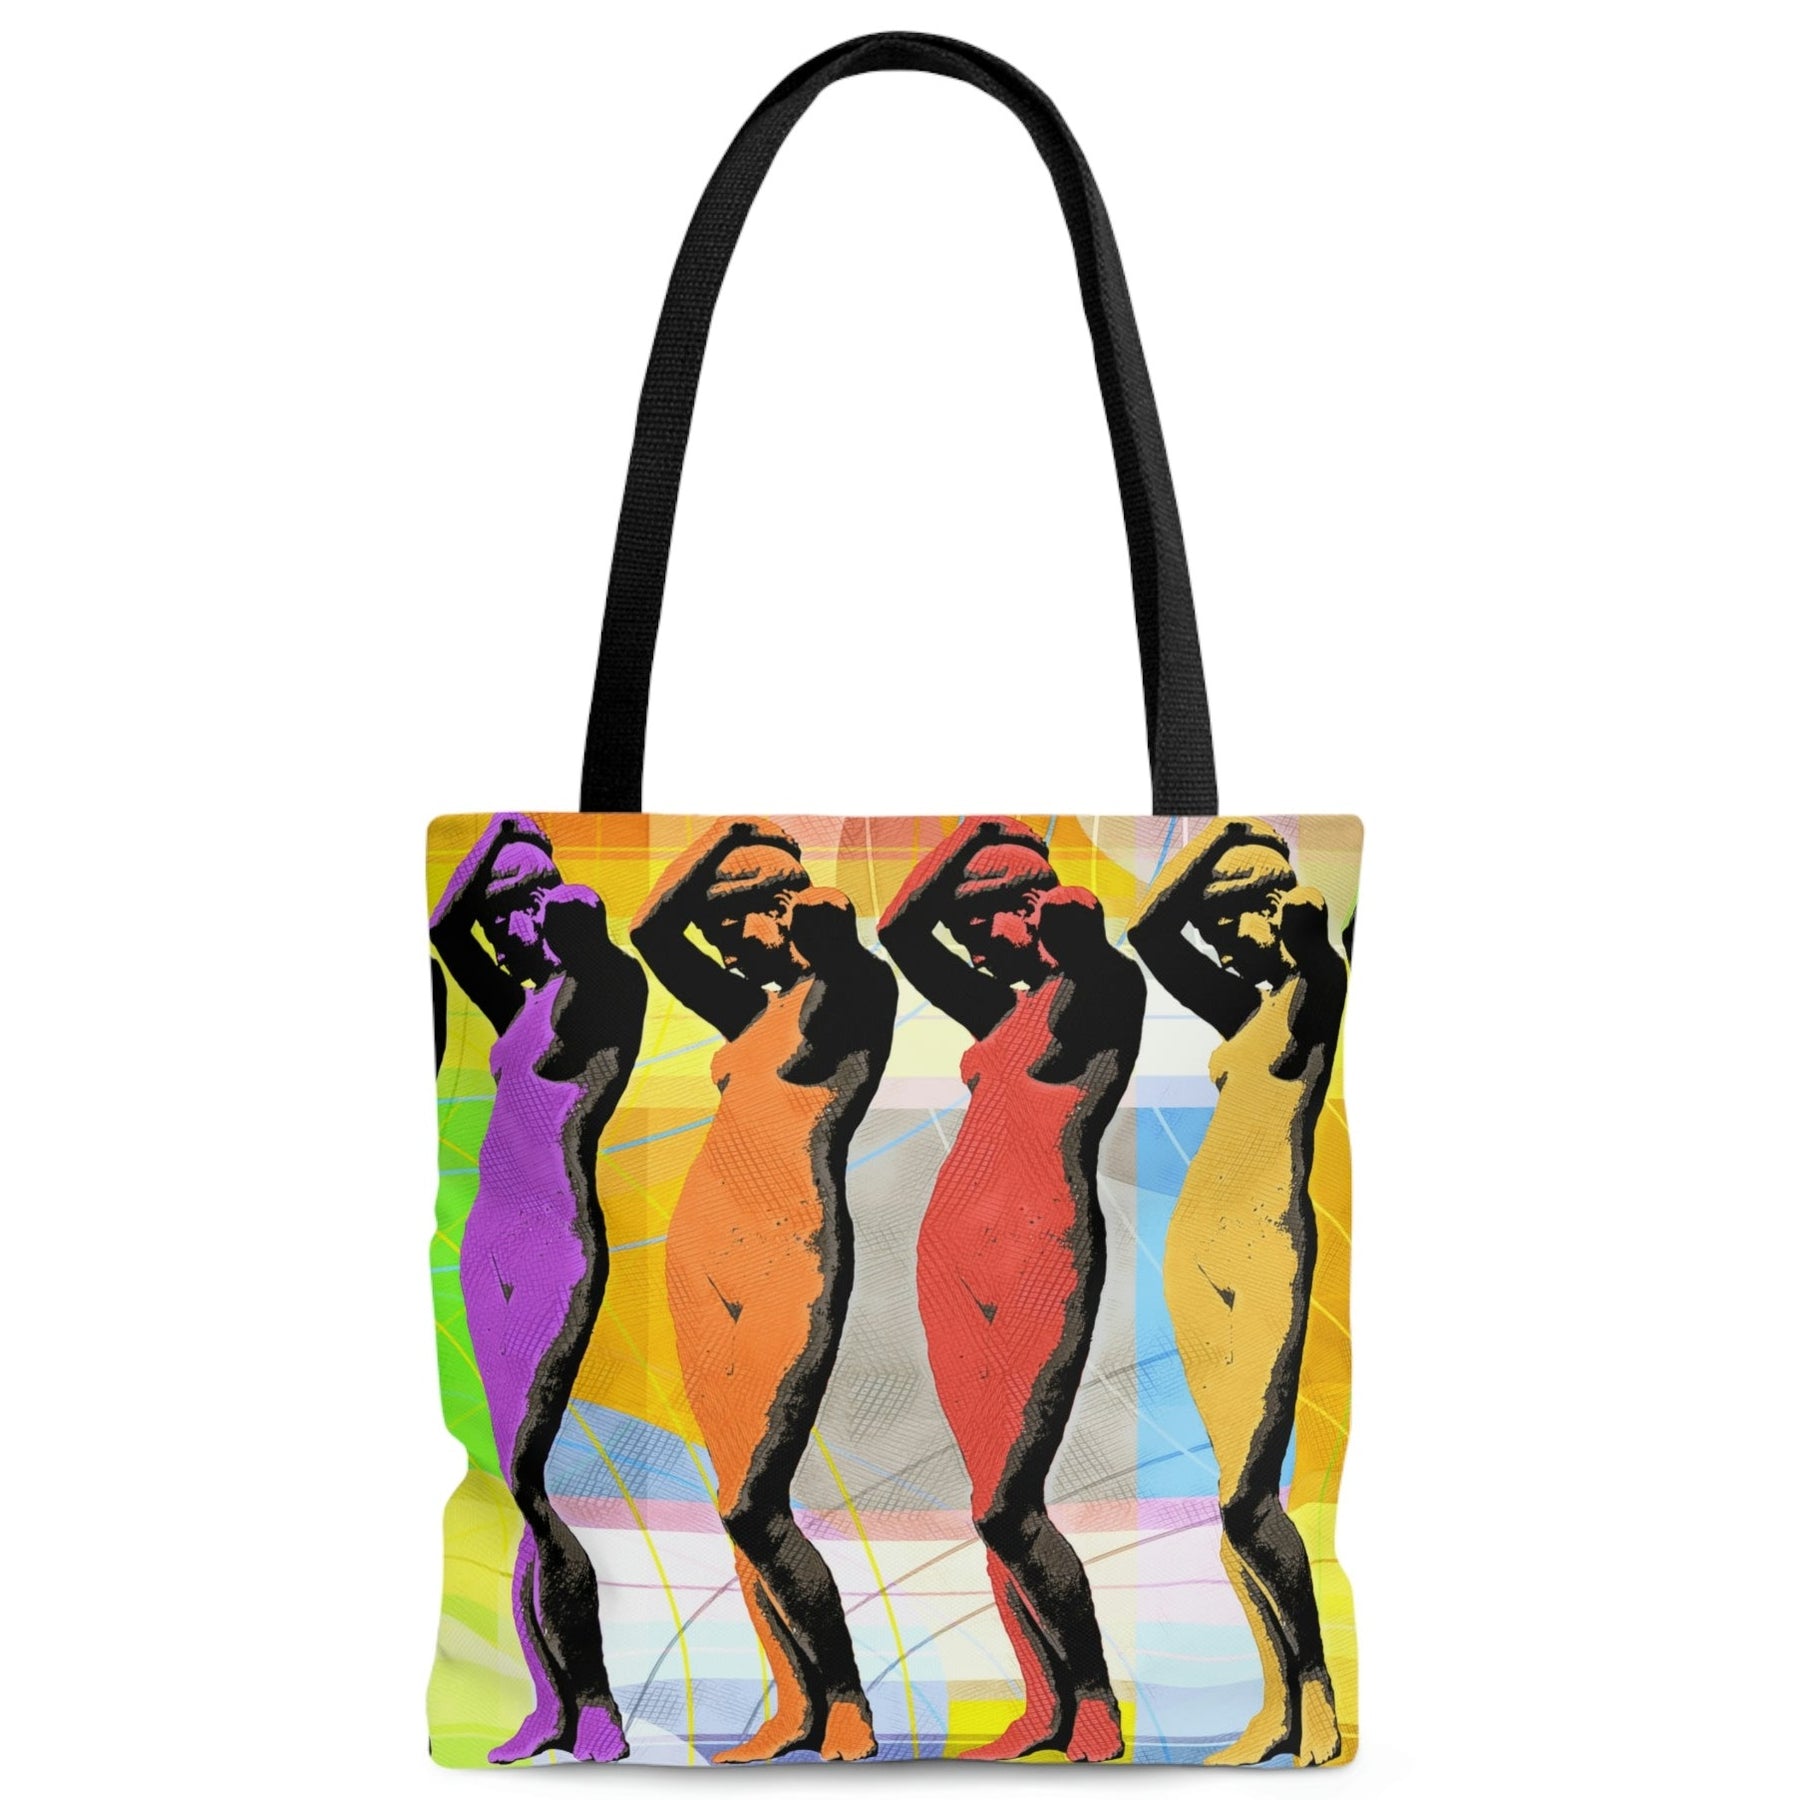 Pop Art Bags